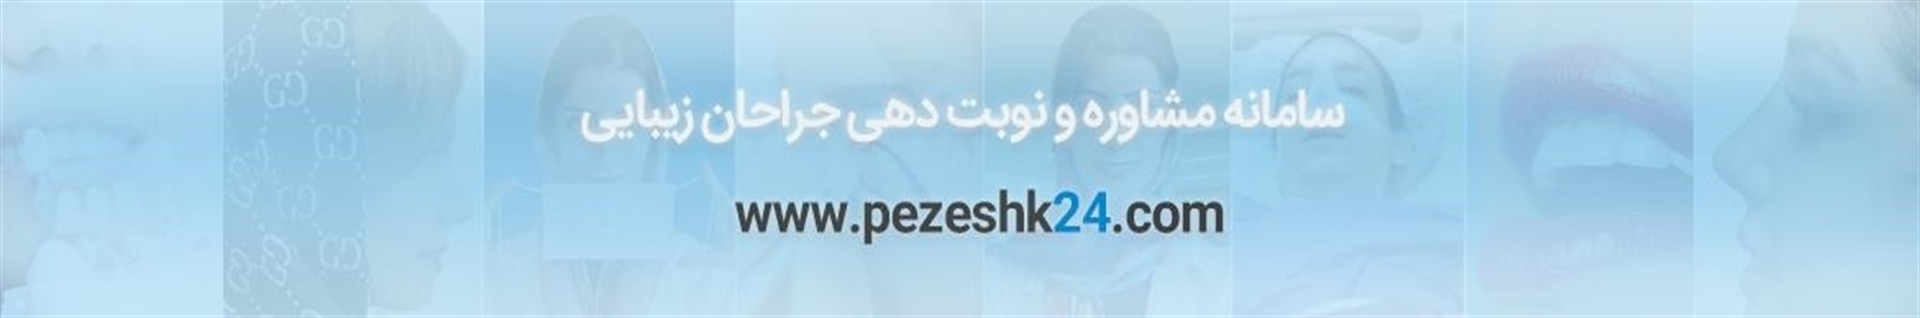 پزشک 24  |  pezeshk24